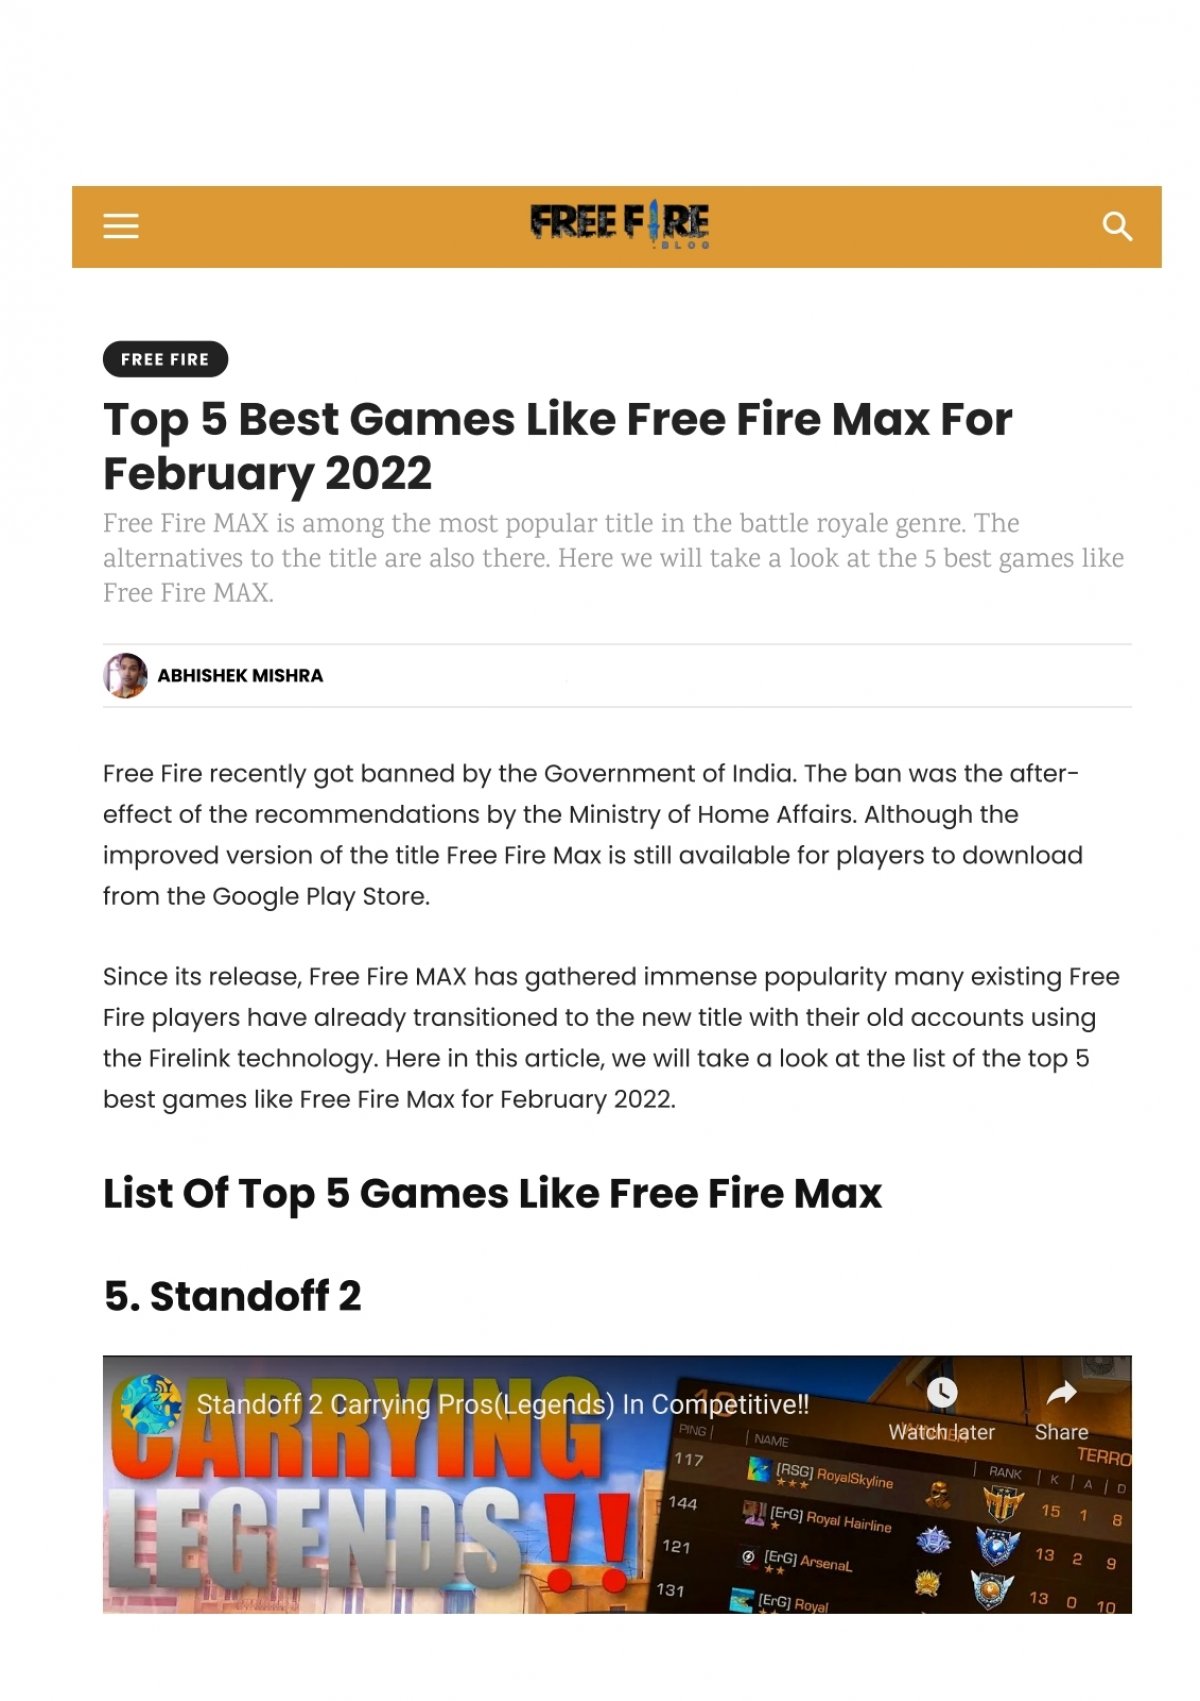 Top 5: games parecidos com Free Fire 